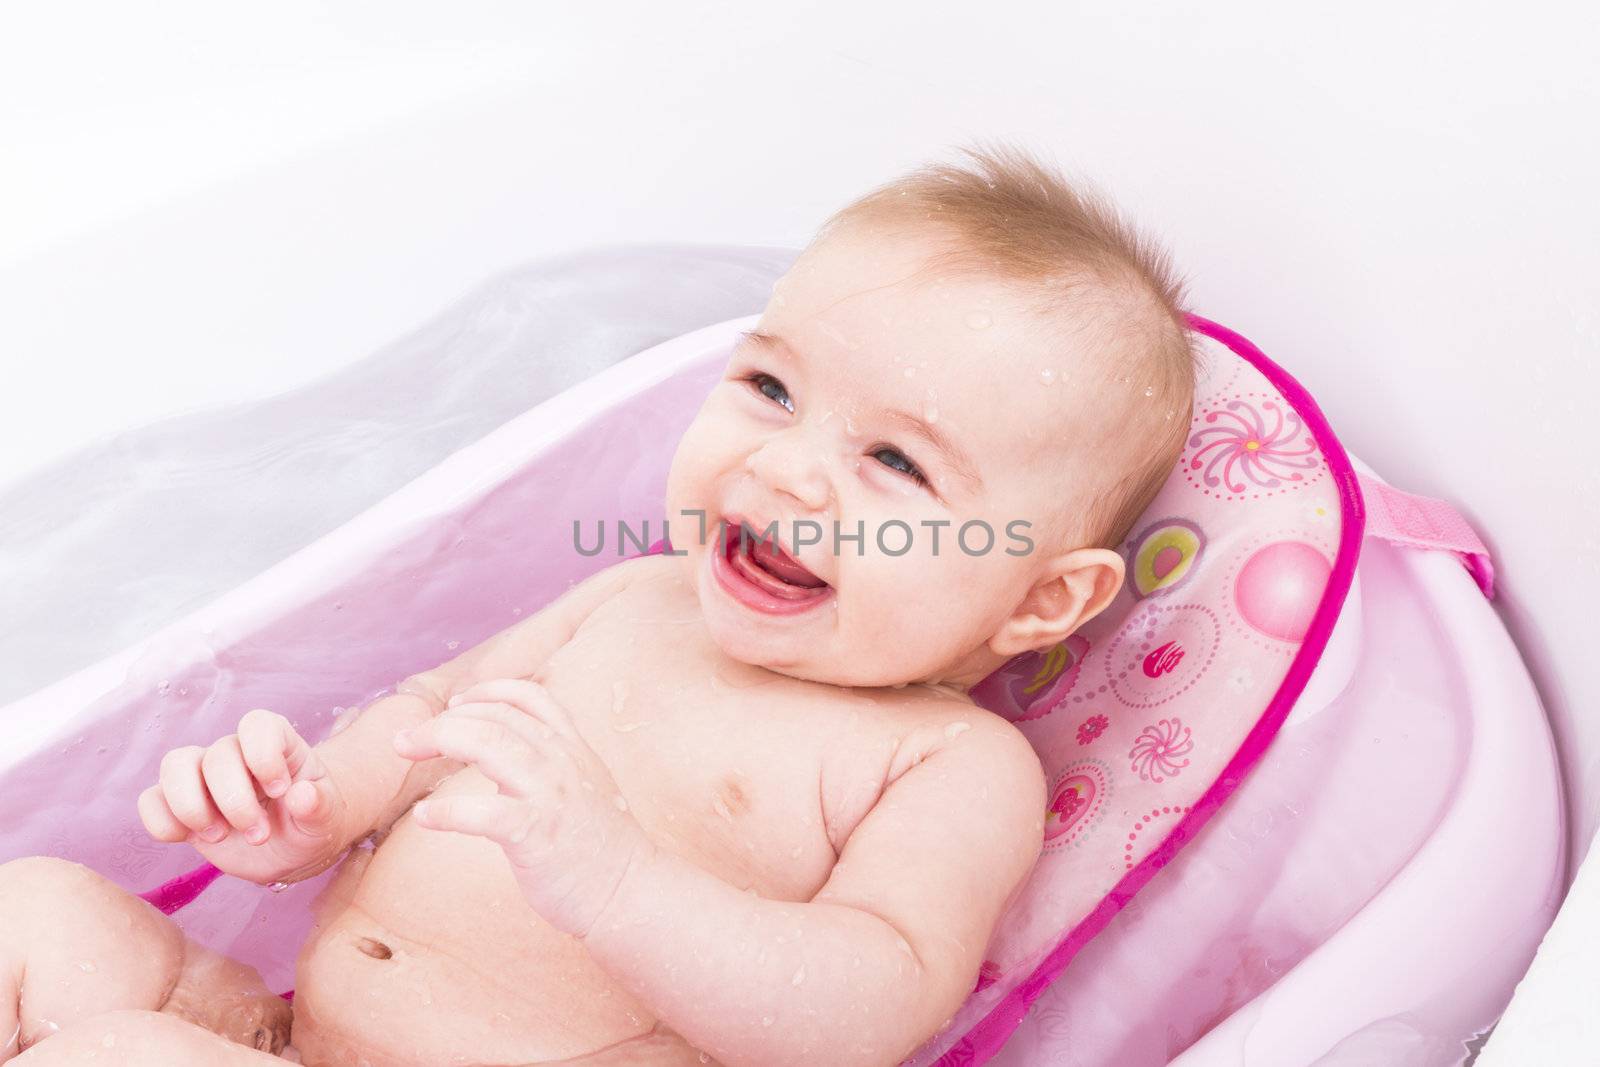 Pretty smiley baby girl is having a bath in her bathtub.